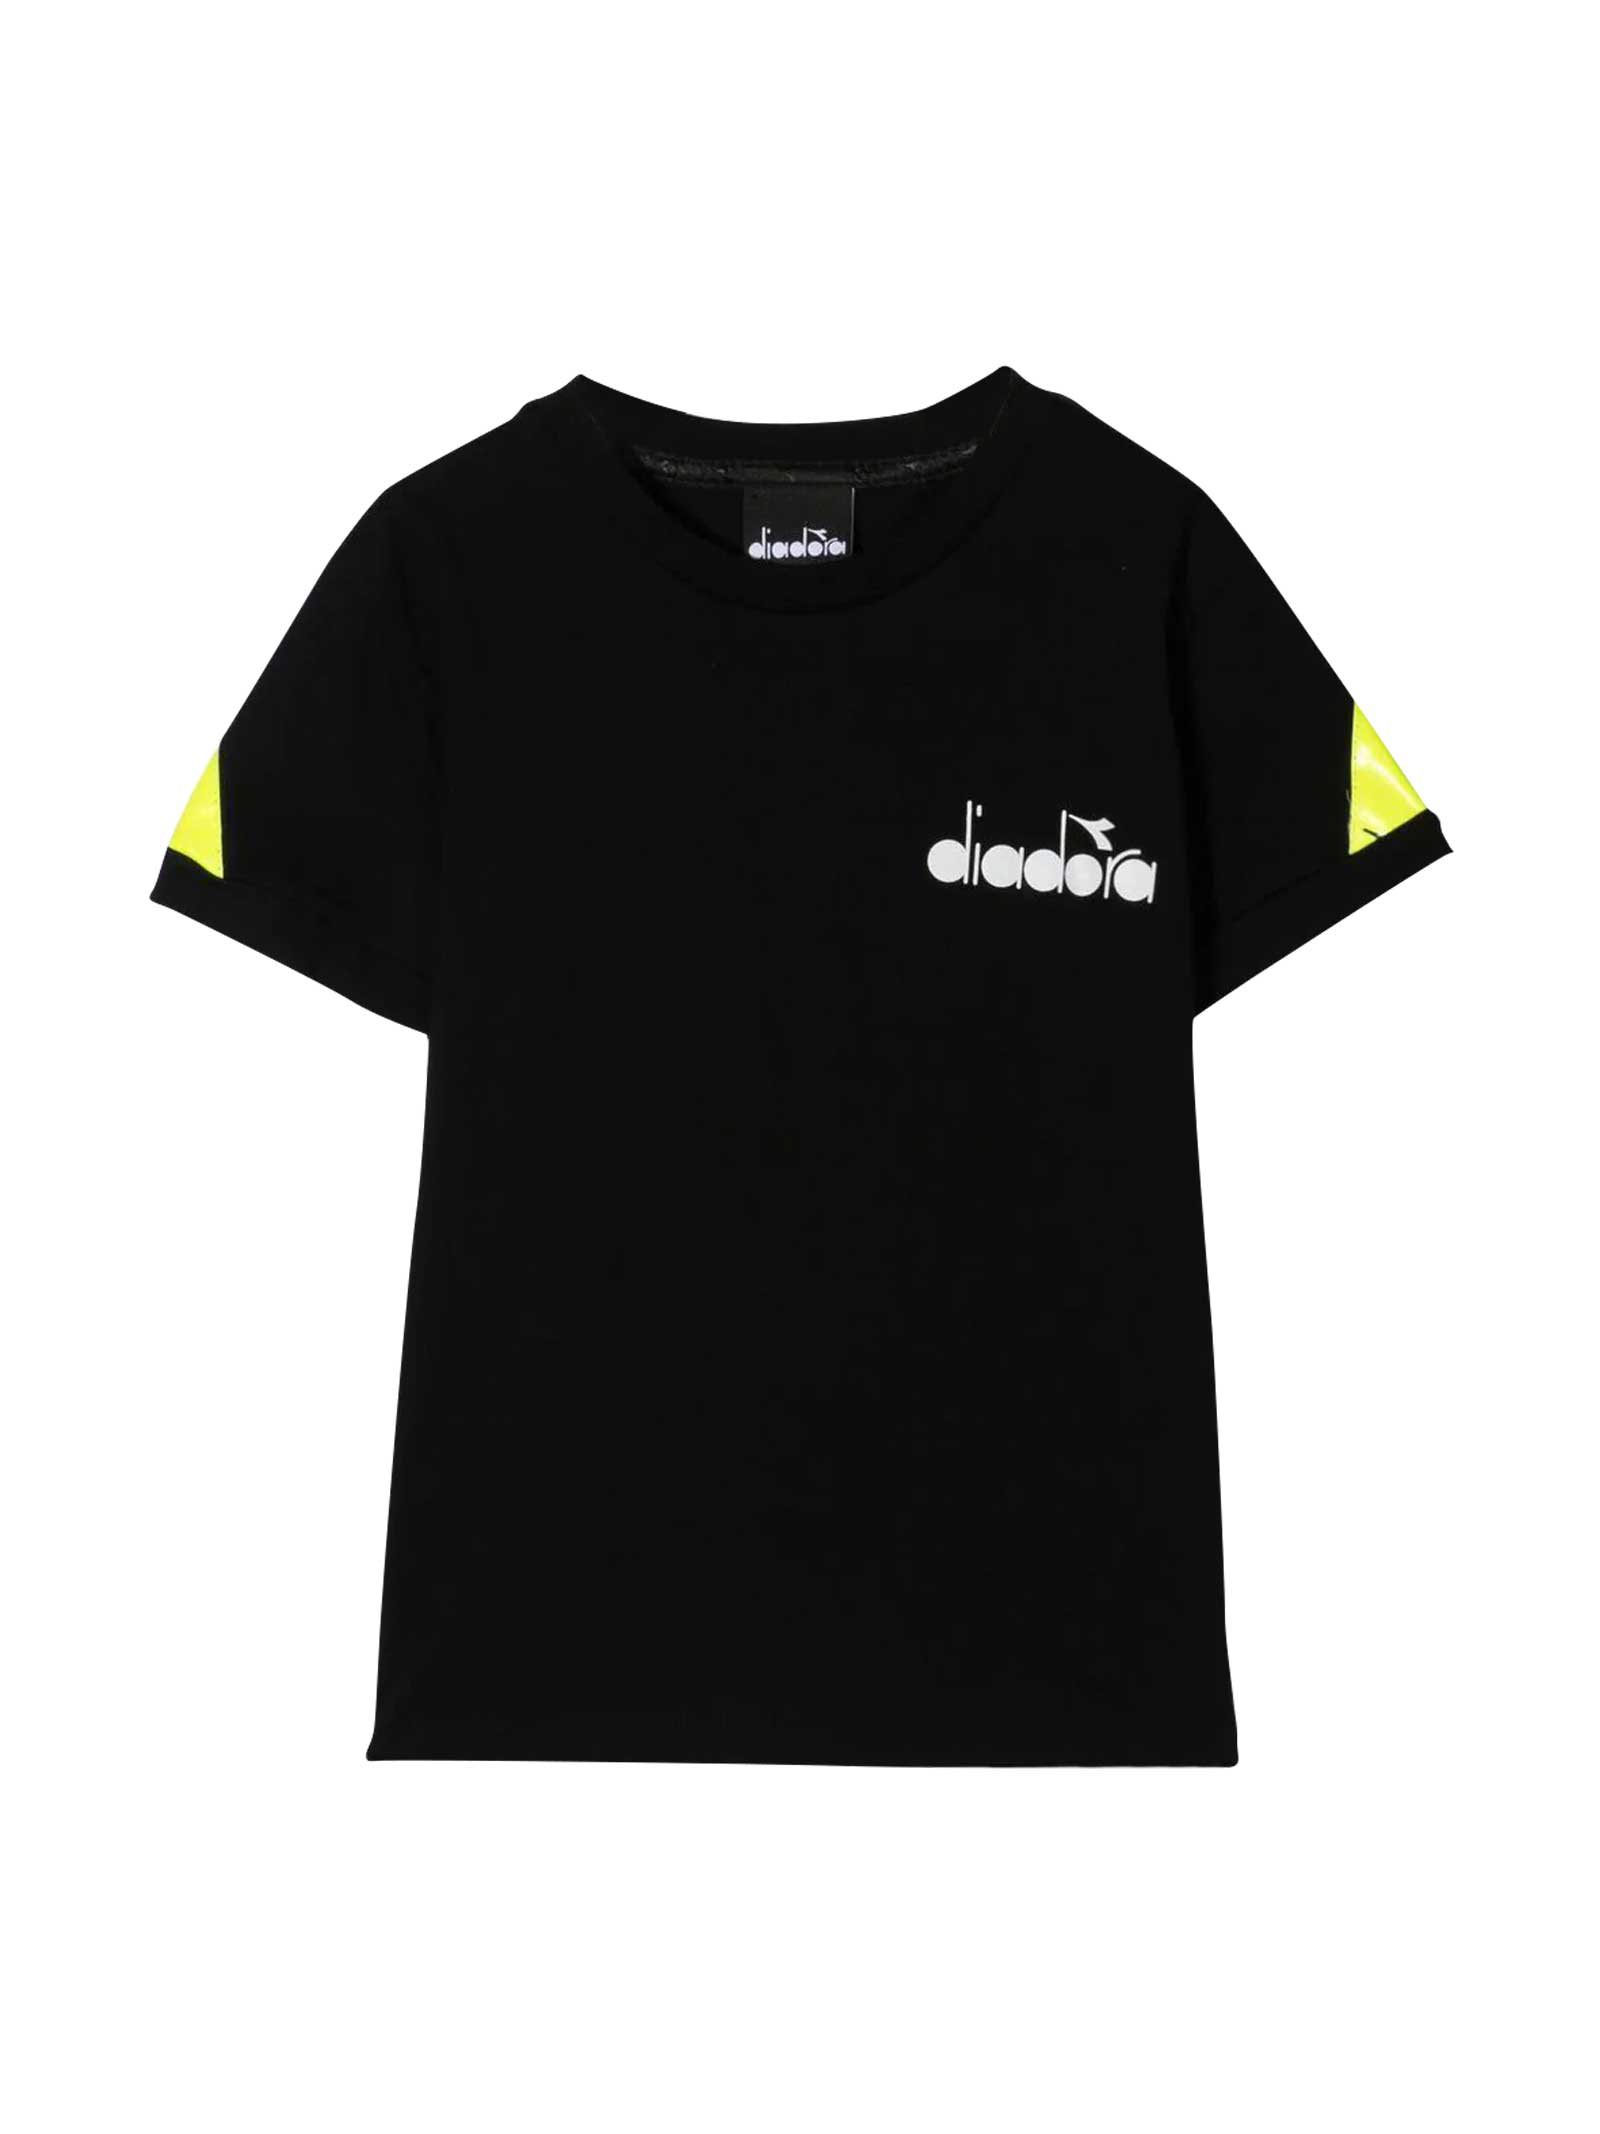 Diadora Diadora Kids Black T-shirt